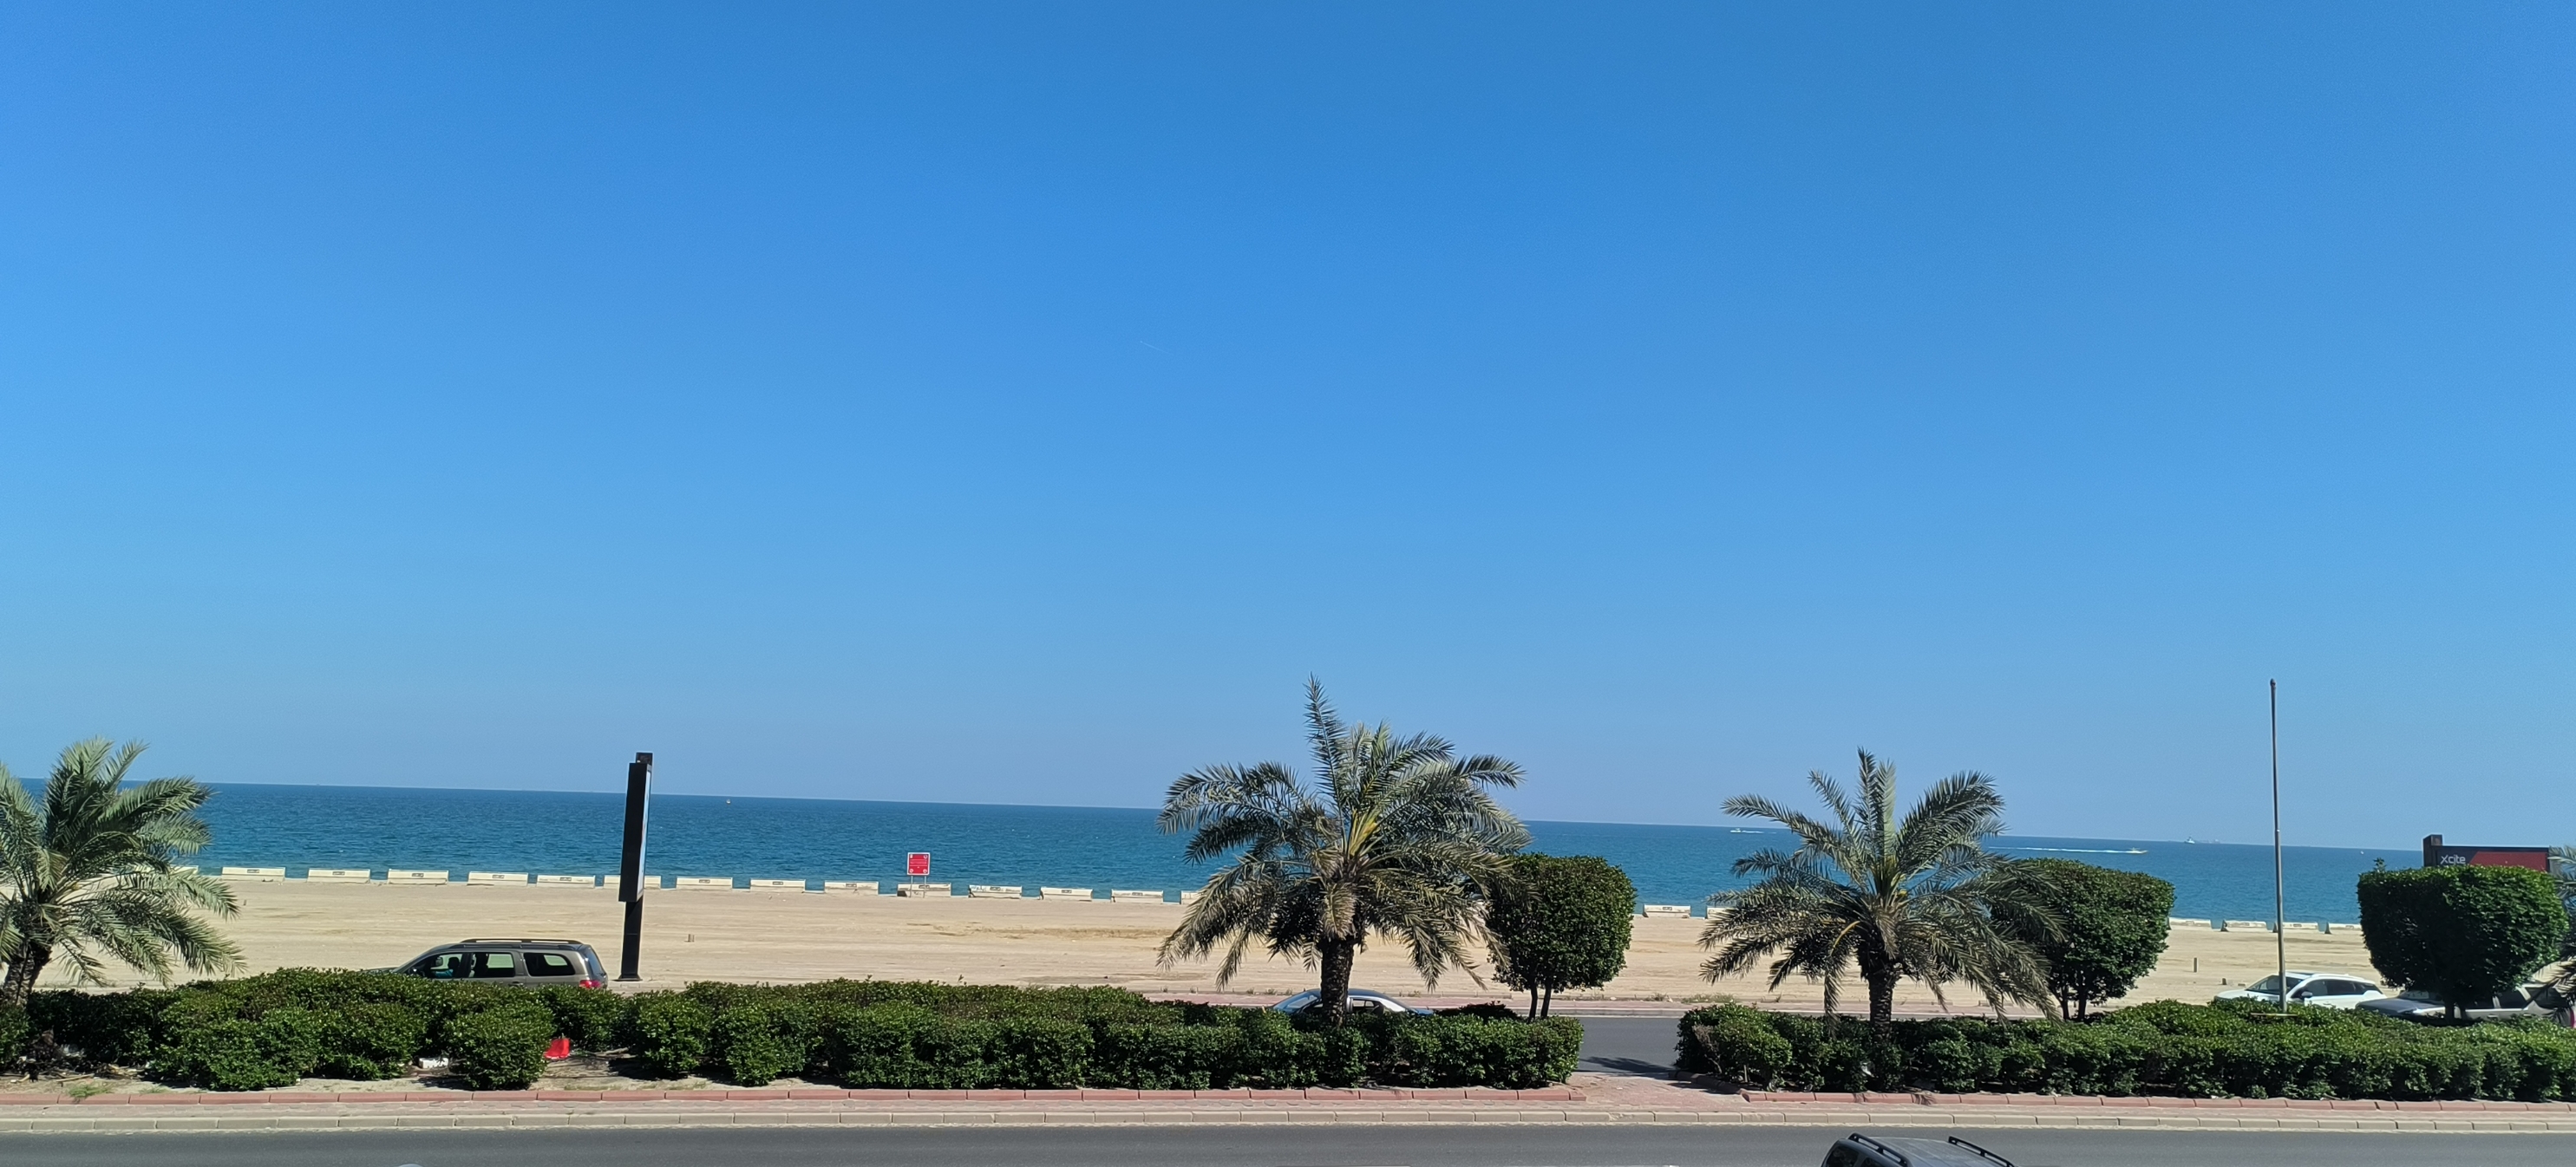 科威特，中东海湾石油输出成员国。沙漠天气，大部分时间阳光灿烂，雨水很少。气候干燥，不过这个季节气温温